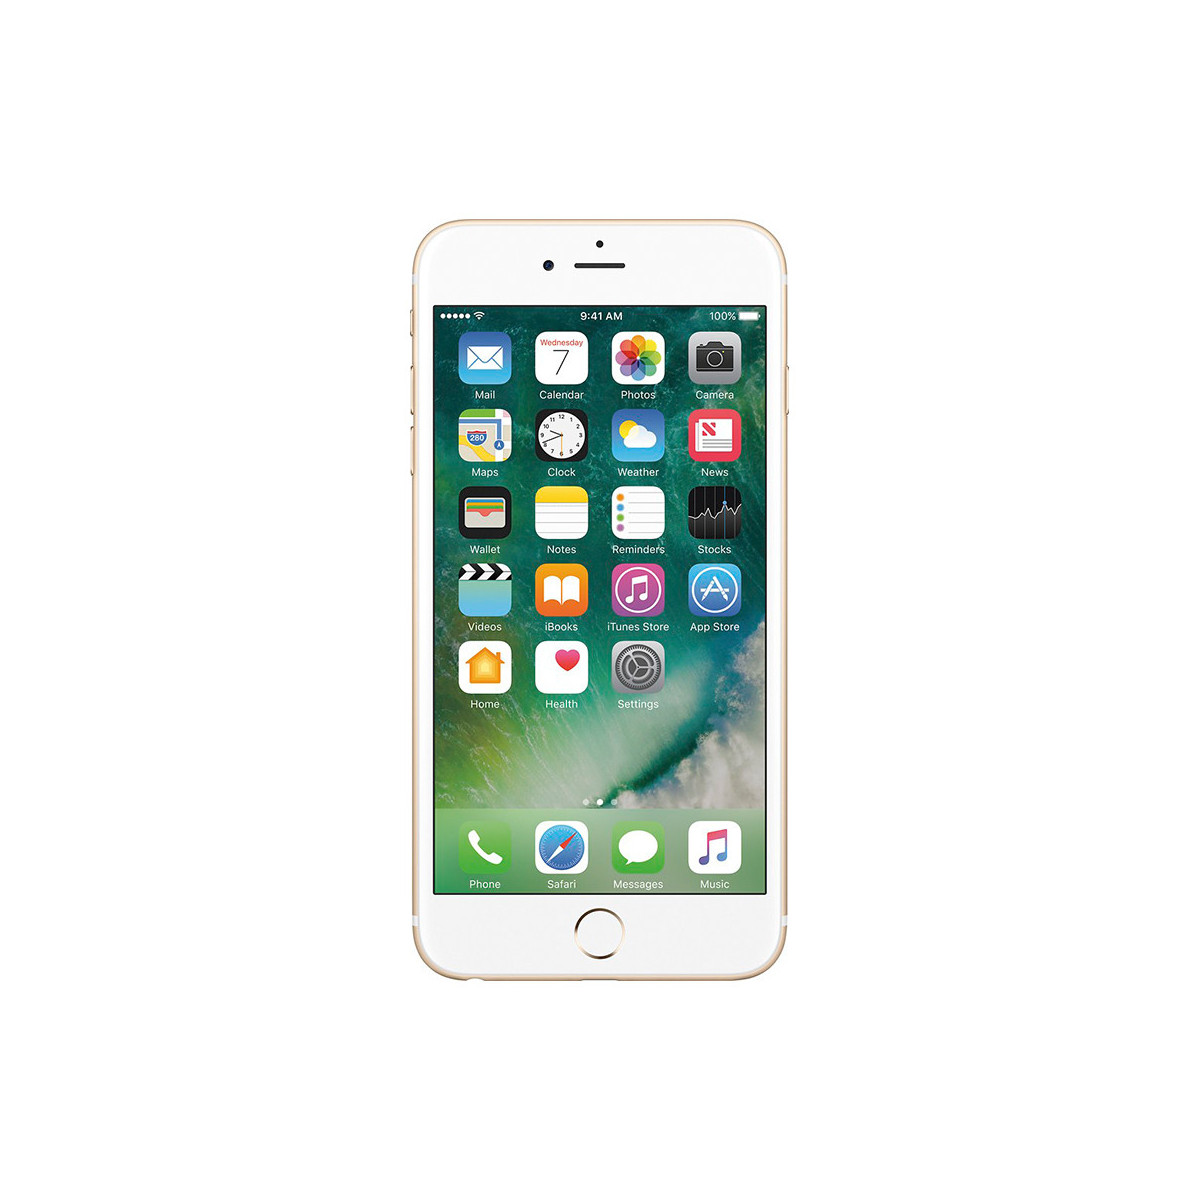 Apple - iPhone 6s Plus Gold